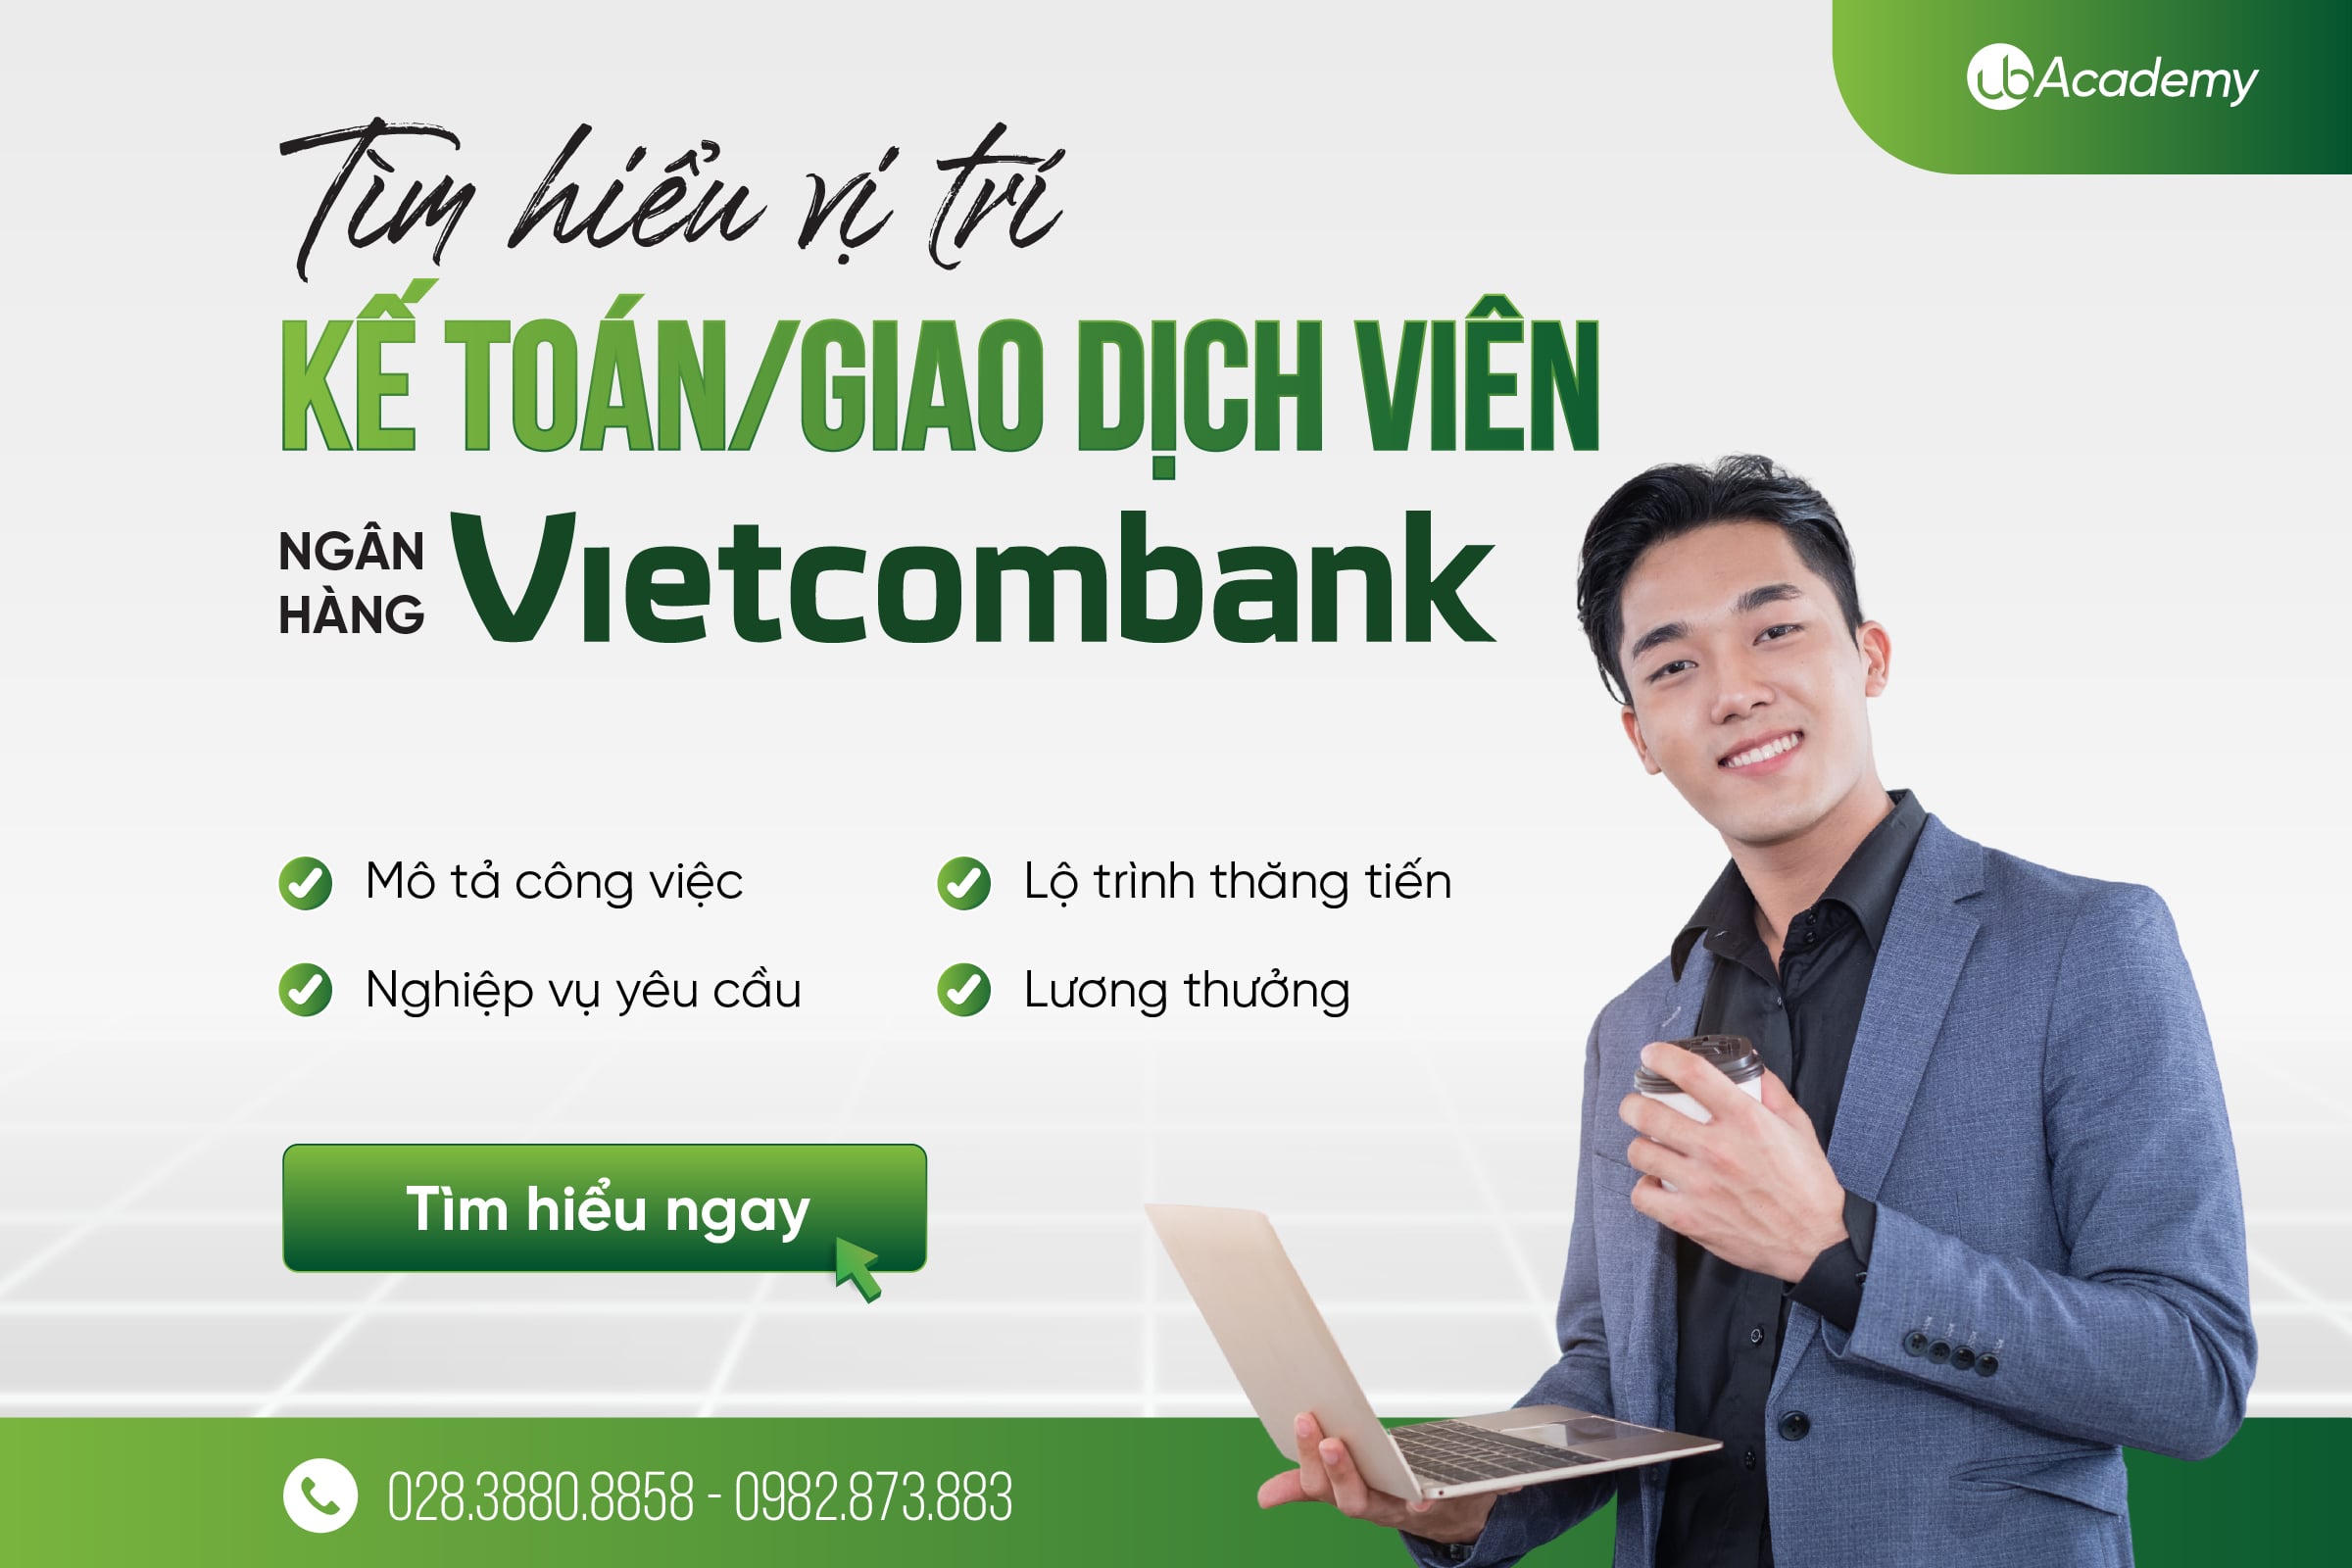 Tìm hiểu vị trí Kế toán/ Giao dịch viên tại Ngân hàng Vietcombank